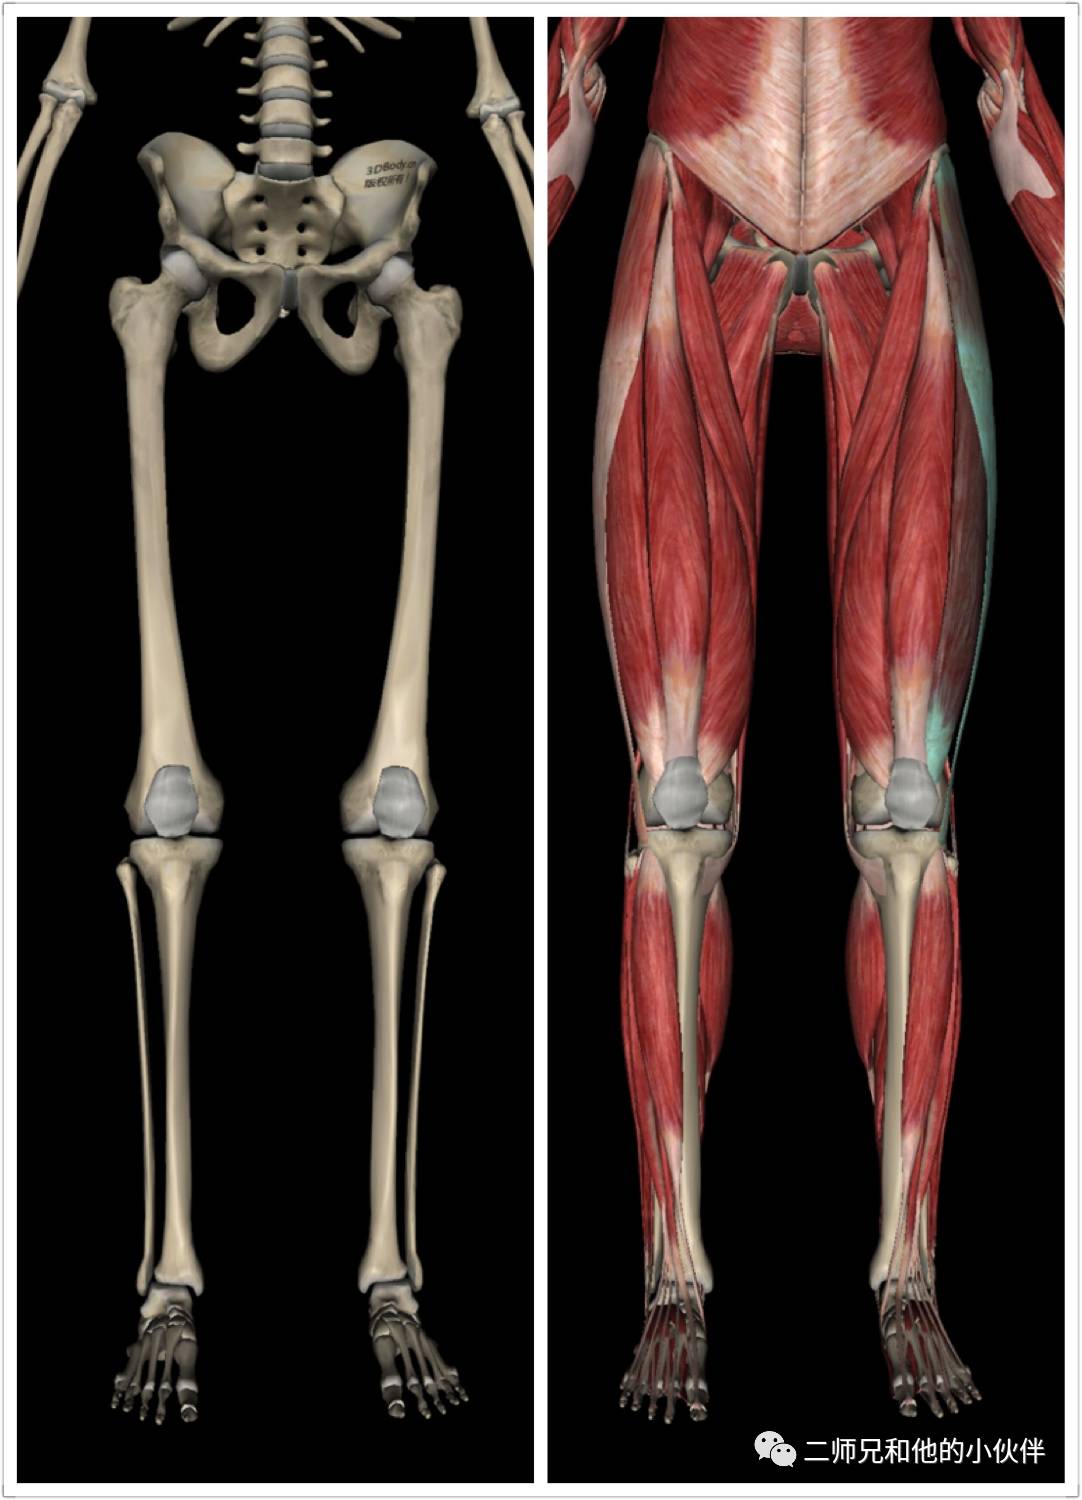 大腿结构图一些示例和解决方法;大腿外侧突出的原因;大腿结构解剖图